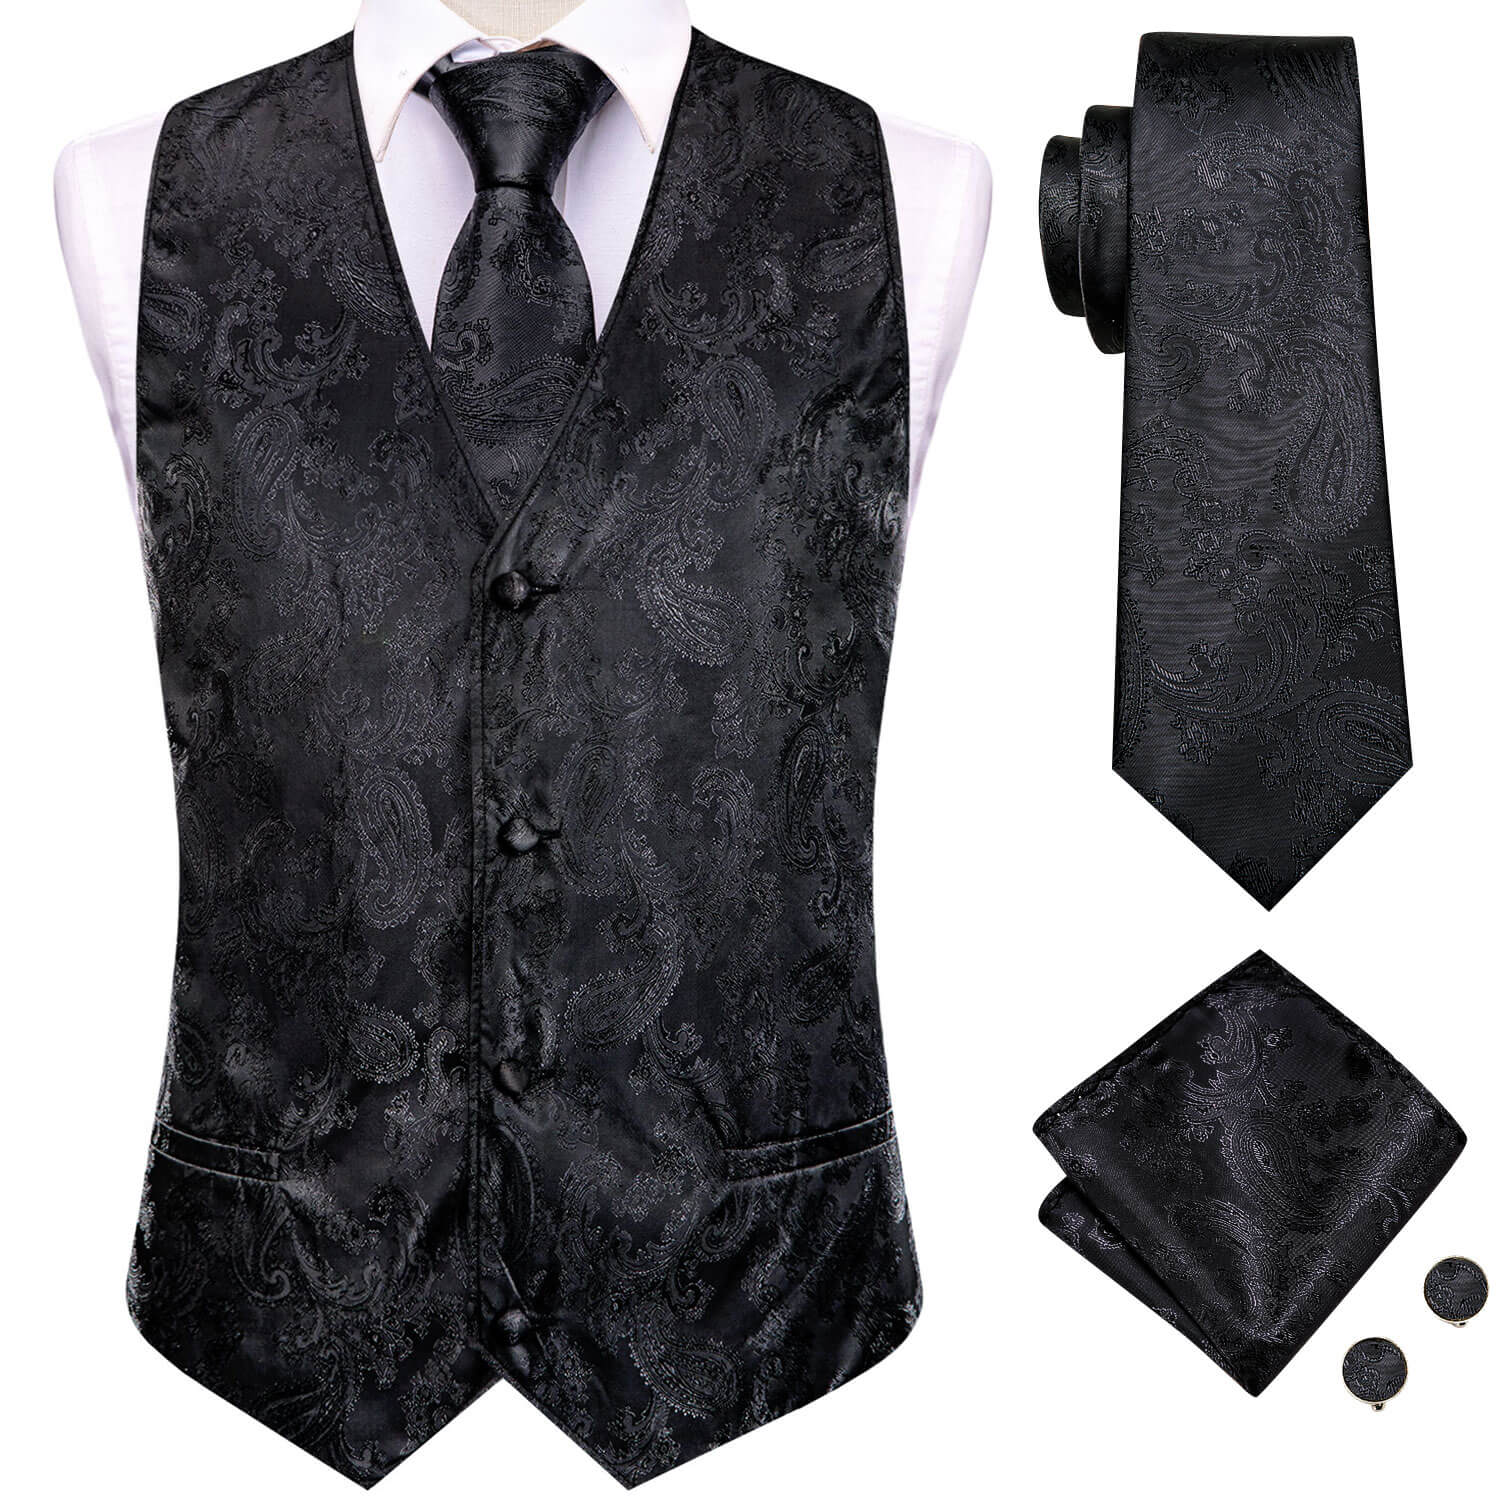 Black Jacquard Paisley Mens Vest and Tie Set